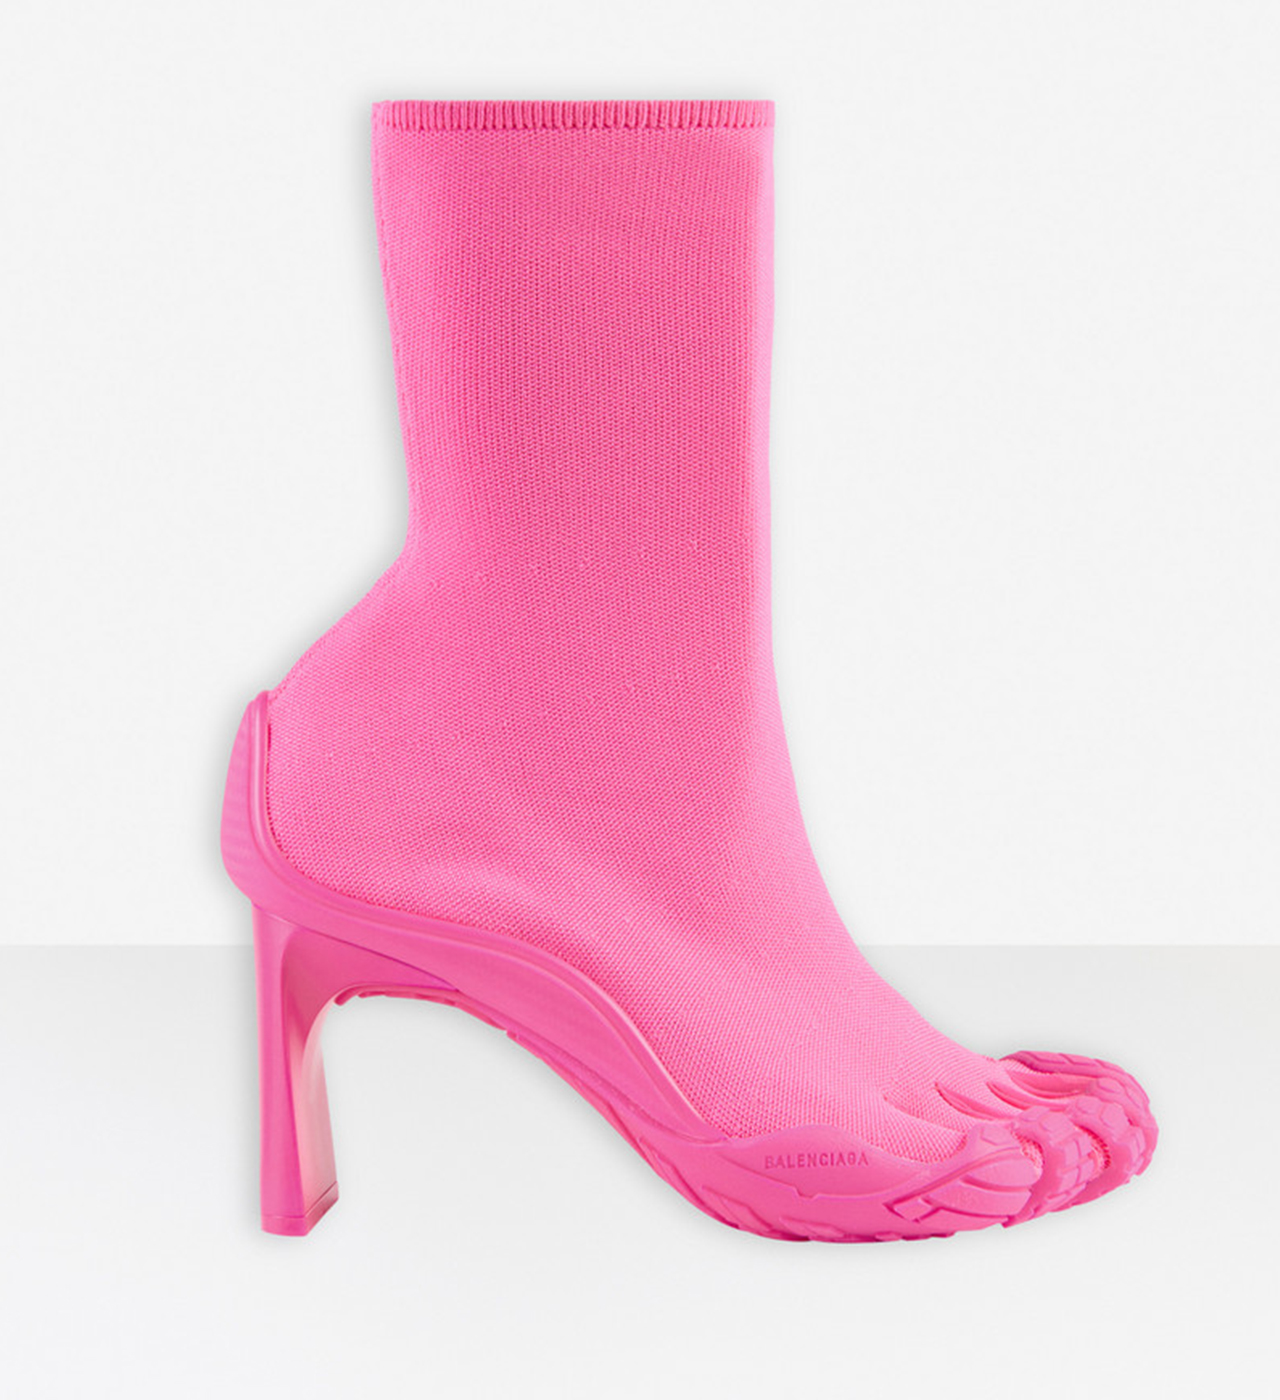 Balenciaga and Vibram Unveil 'Toe' Shoe Collection | Grazia